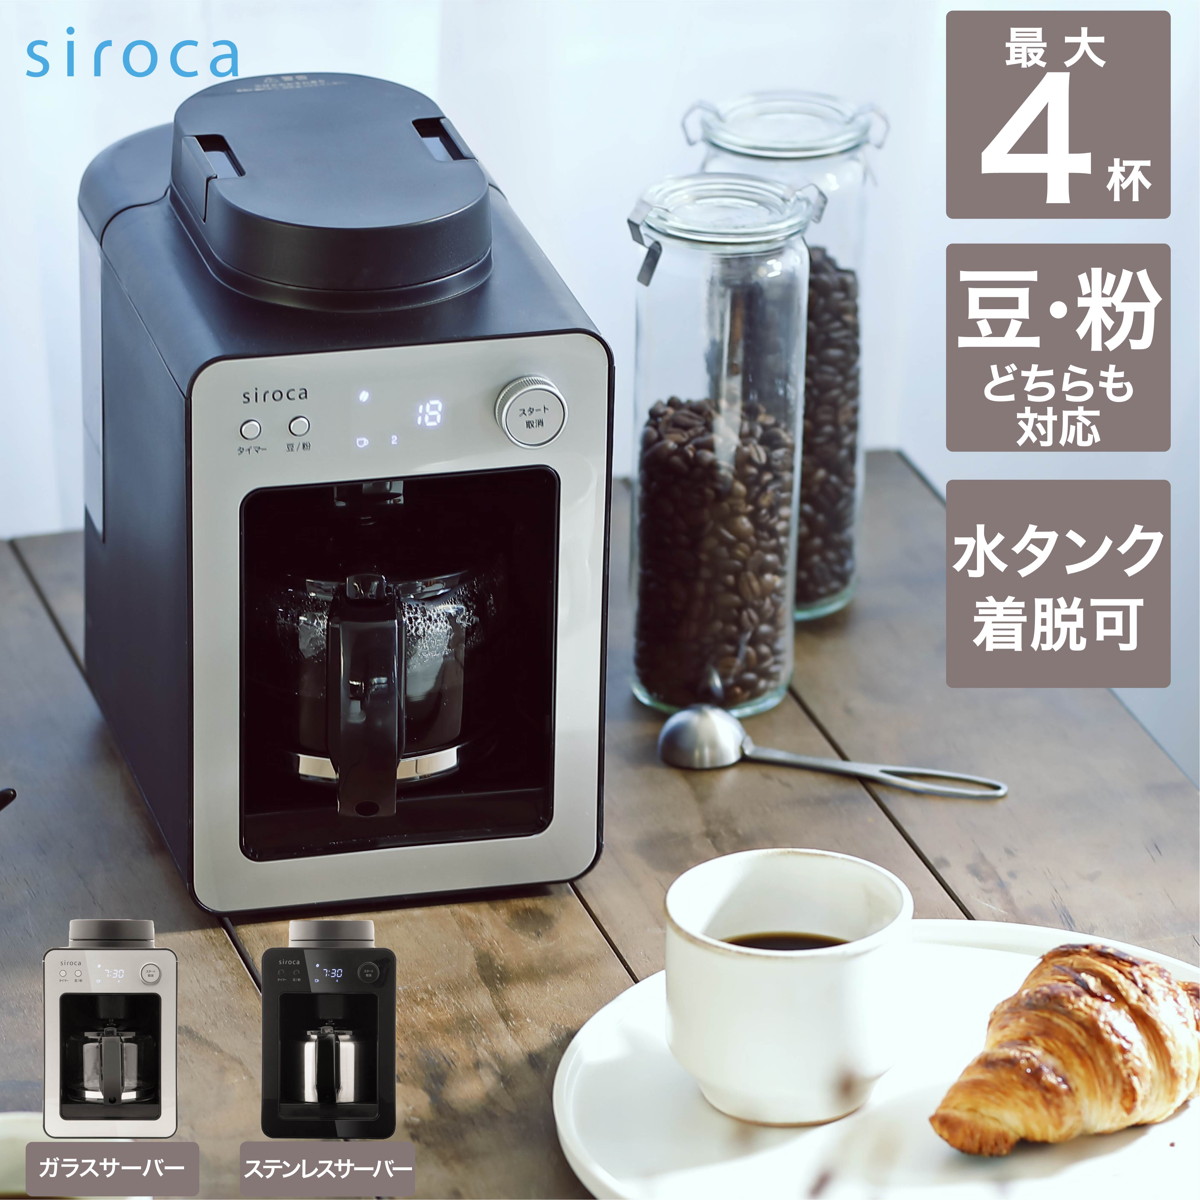 siroca 全自動コーヒーメーカー カフェばこ ガラスサーバー 静音 ミル4段階 コンパクト 豆・粉両対応 蒸らし タイマー機能 シルバー　 SC-A351(S)